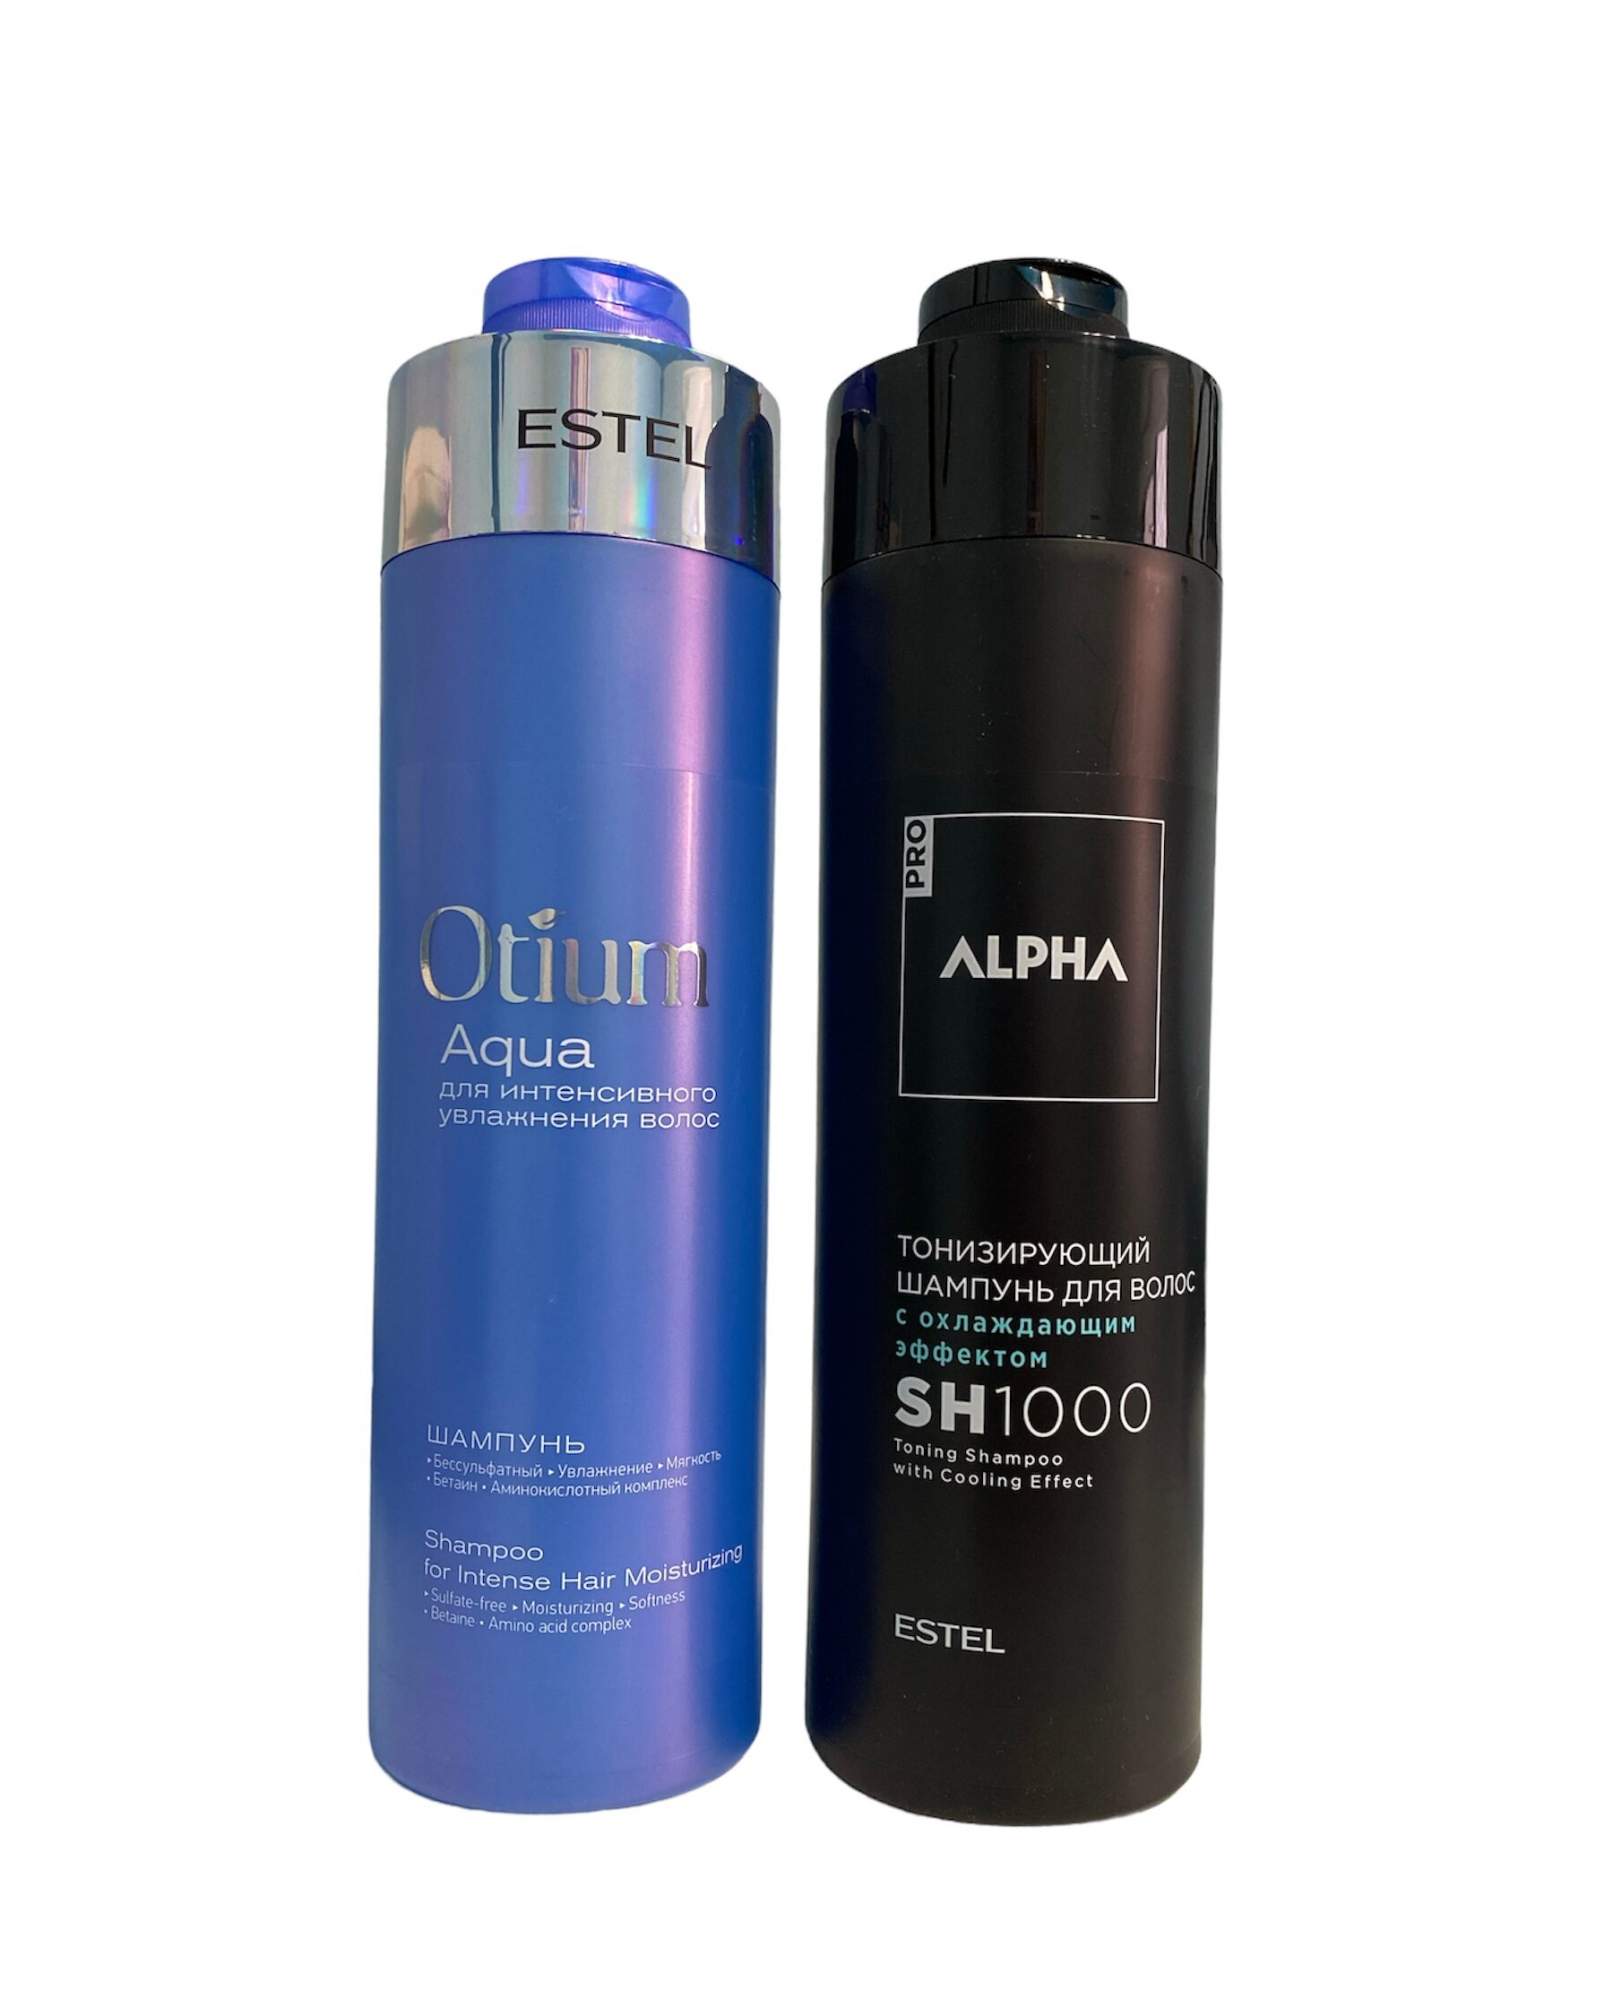 Купить набор ESTEL Шампунь Otium Aqua для увлажнения волос 1000 мл и Шампунь Alpha Homme 1000 мл, цены на Мегамаркет | Артикул: 100061720378